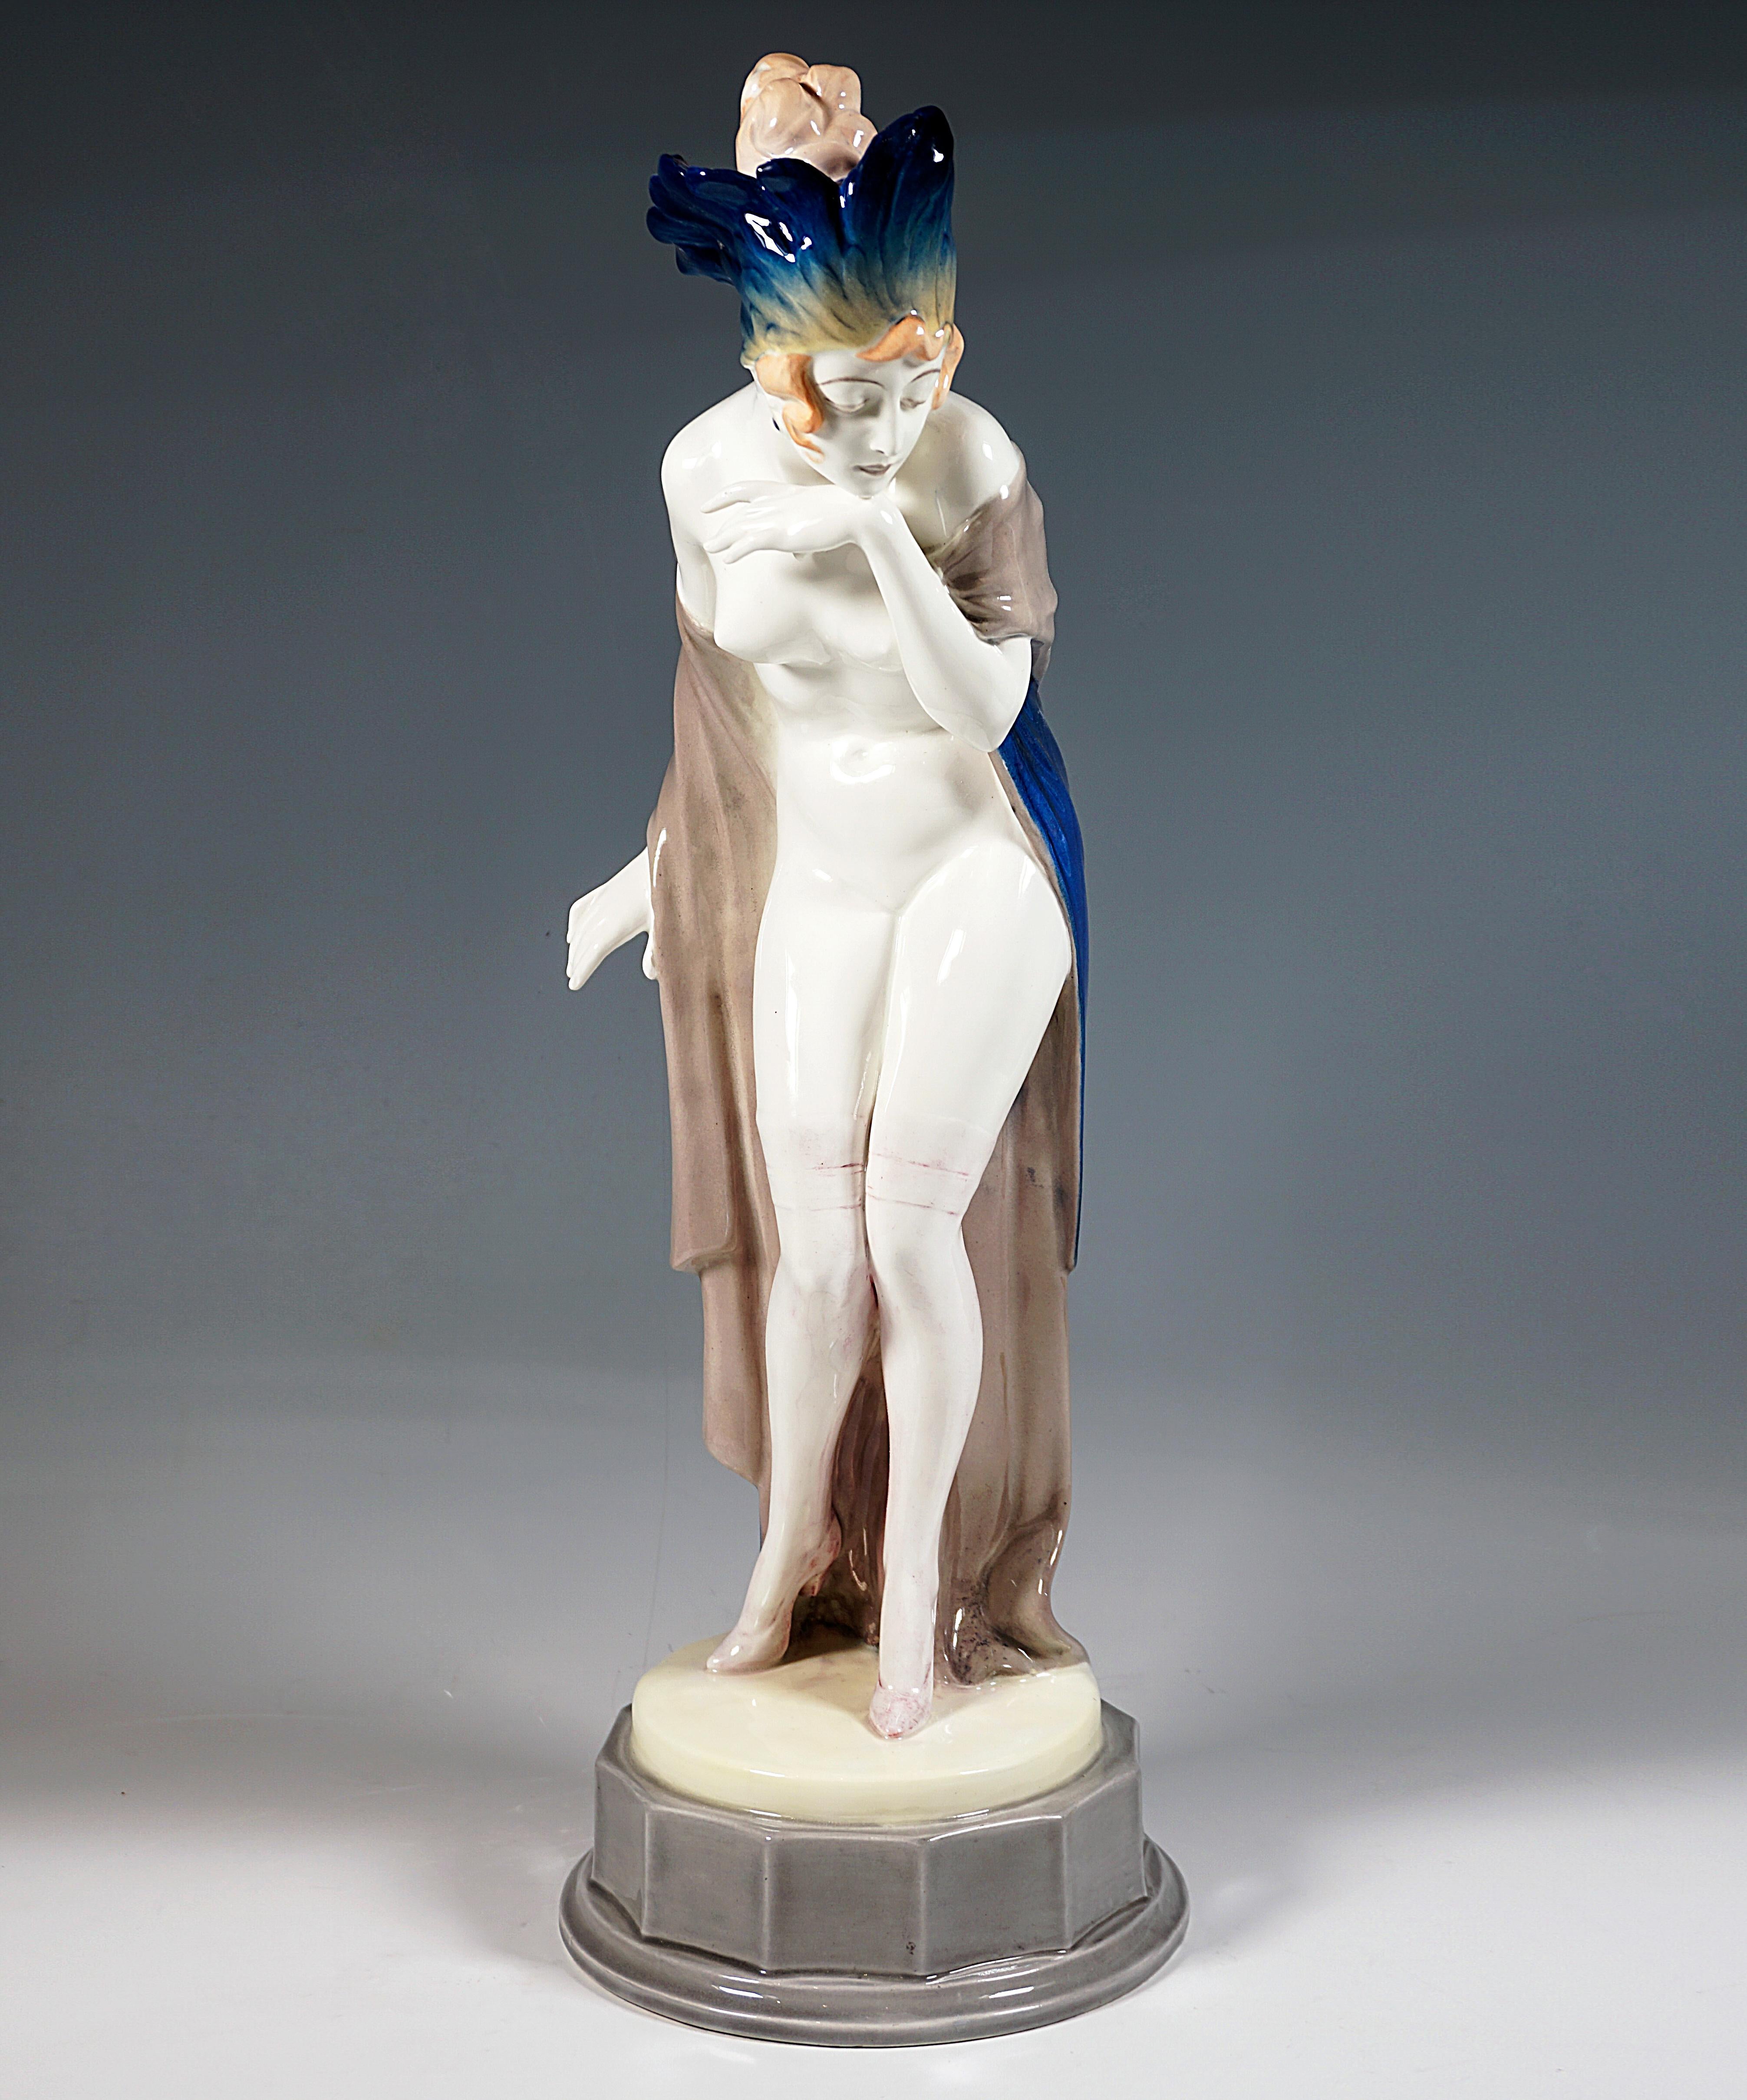 Beeindruckende Goldscheider Wiener Keramikfigur aus den 1920er Jahren:
Die junge Dame mit kunstvoll hochgestecktem Haar trägt nur durchsichtige Strümpfe und hohe Absätze sowie einen dicht mit blau-gelb schattierten Federn geschmückten Kopfschmuck,